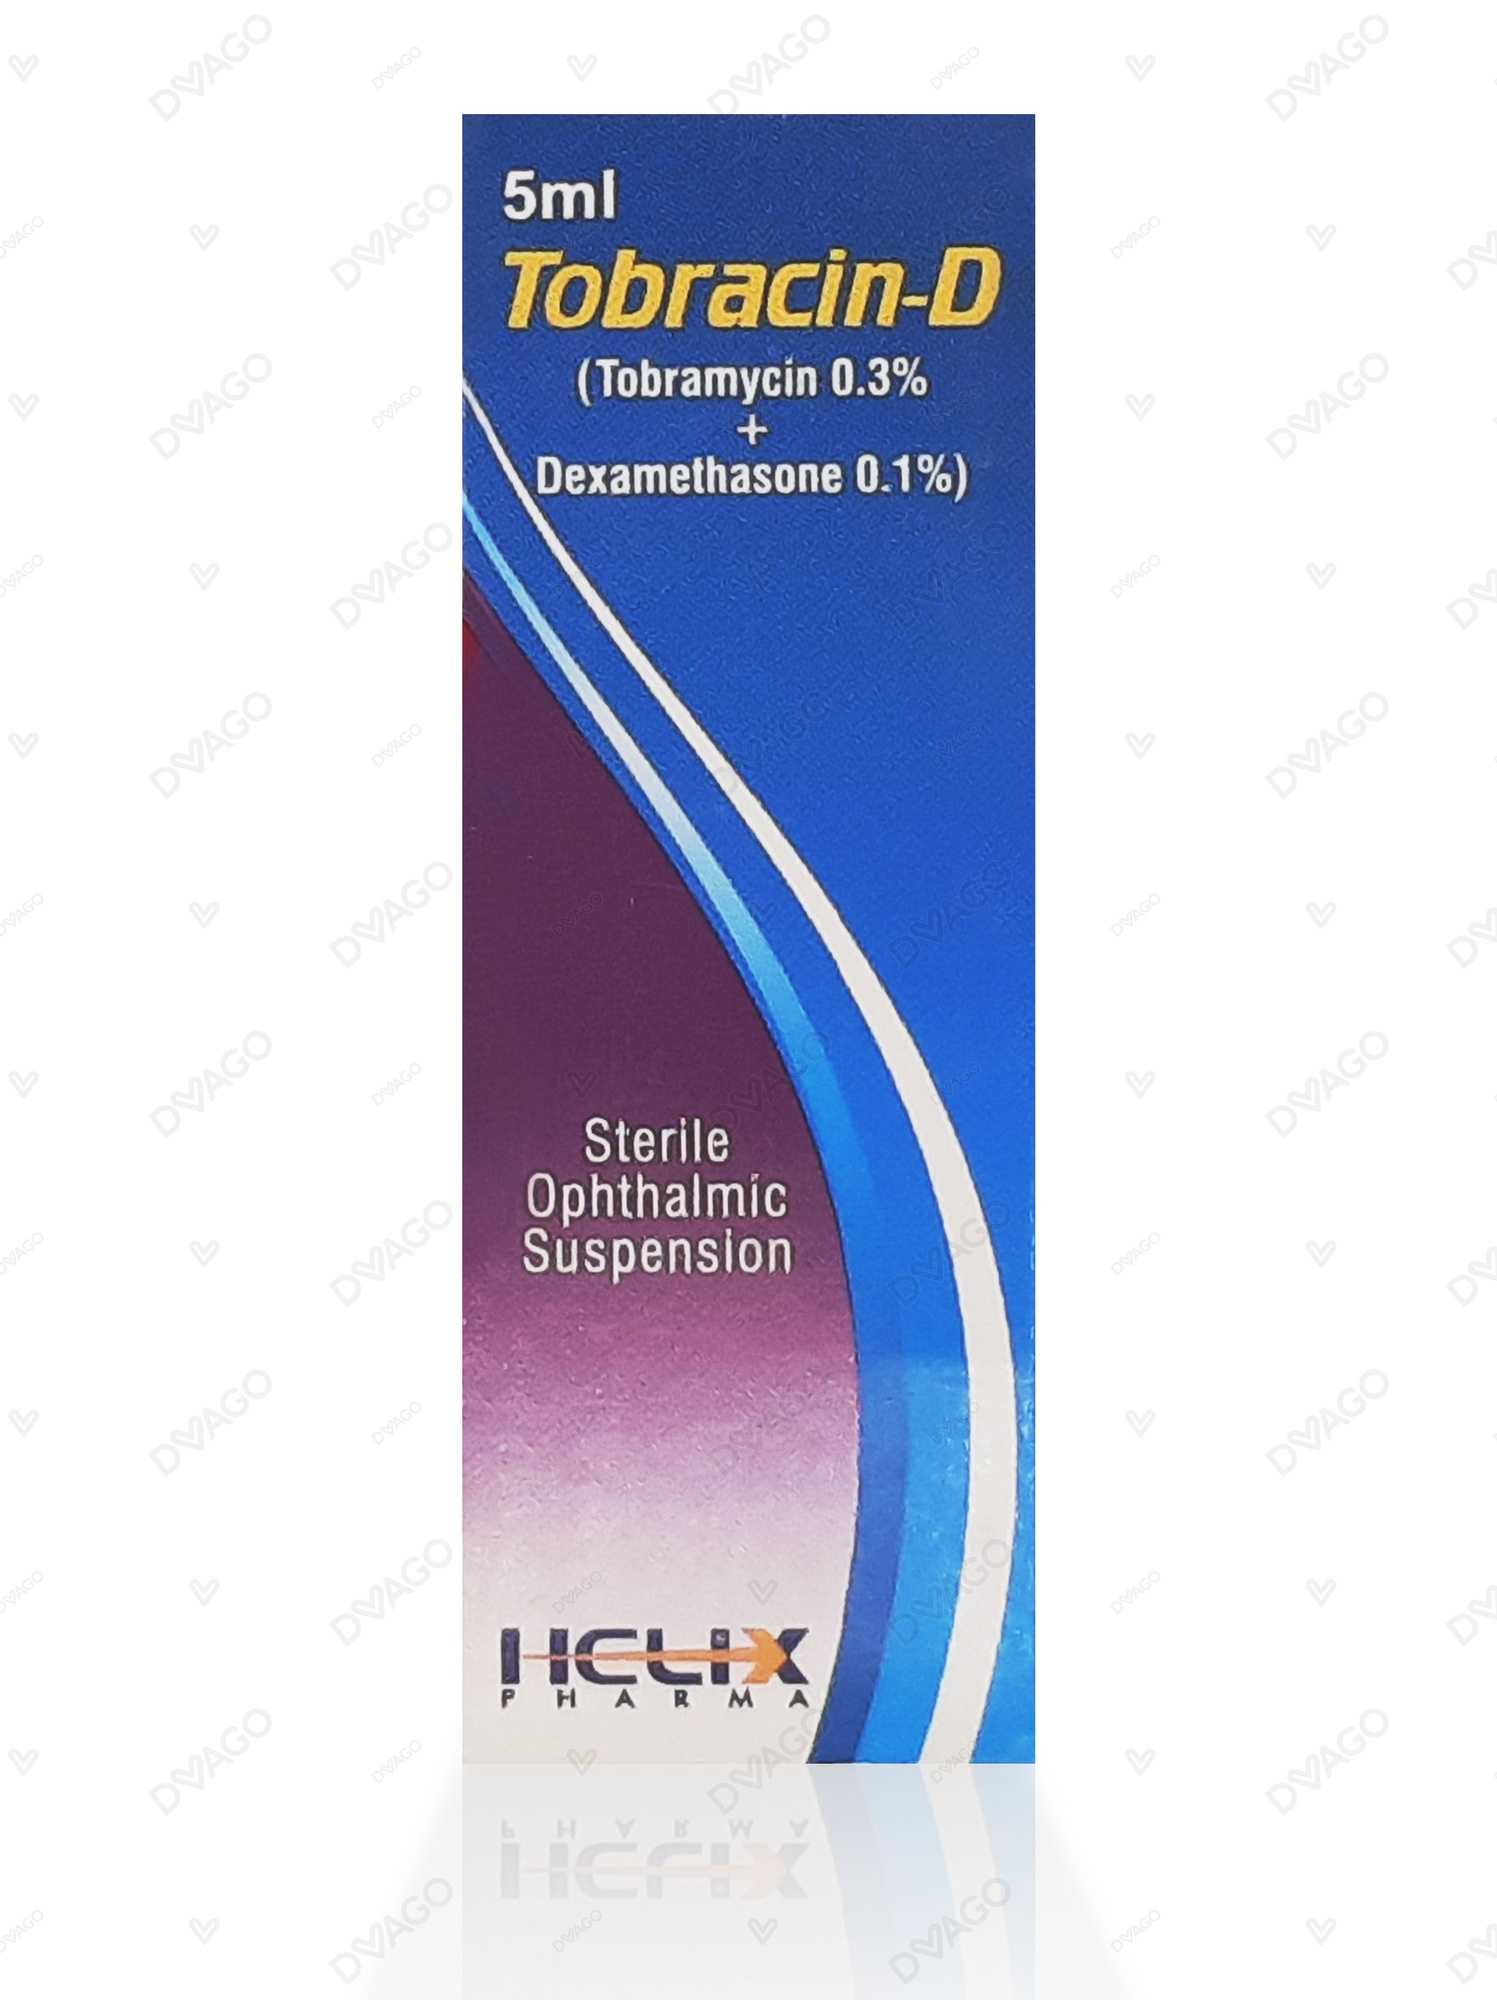 tobracin-d eye drops 5 ml